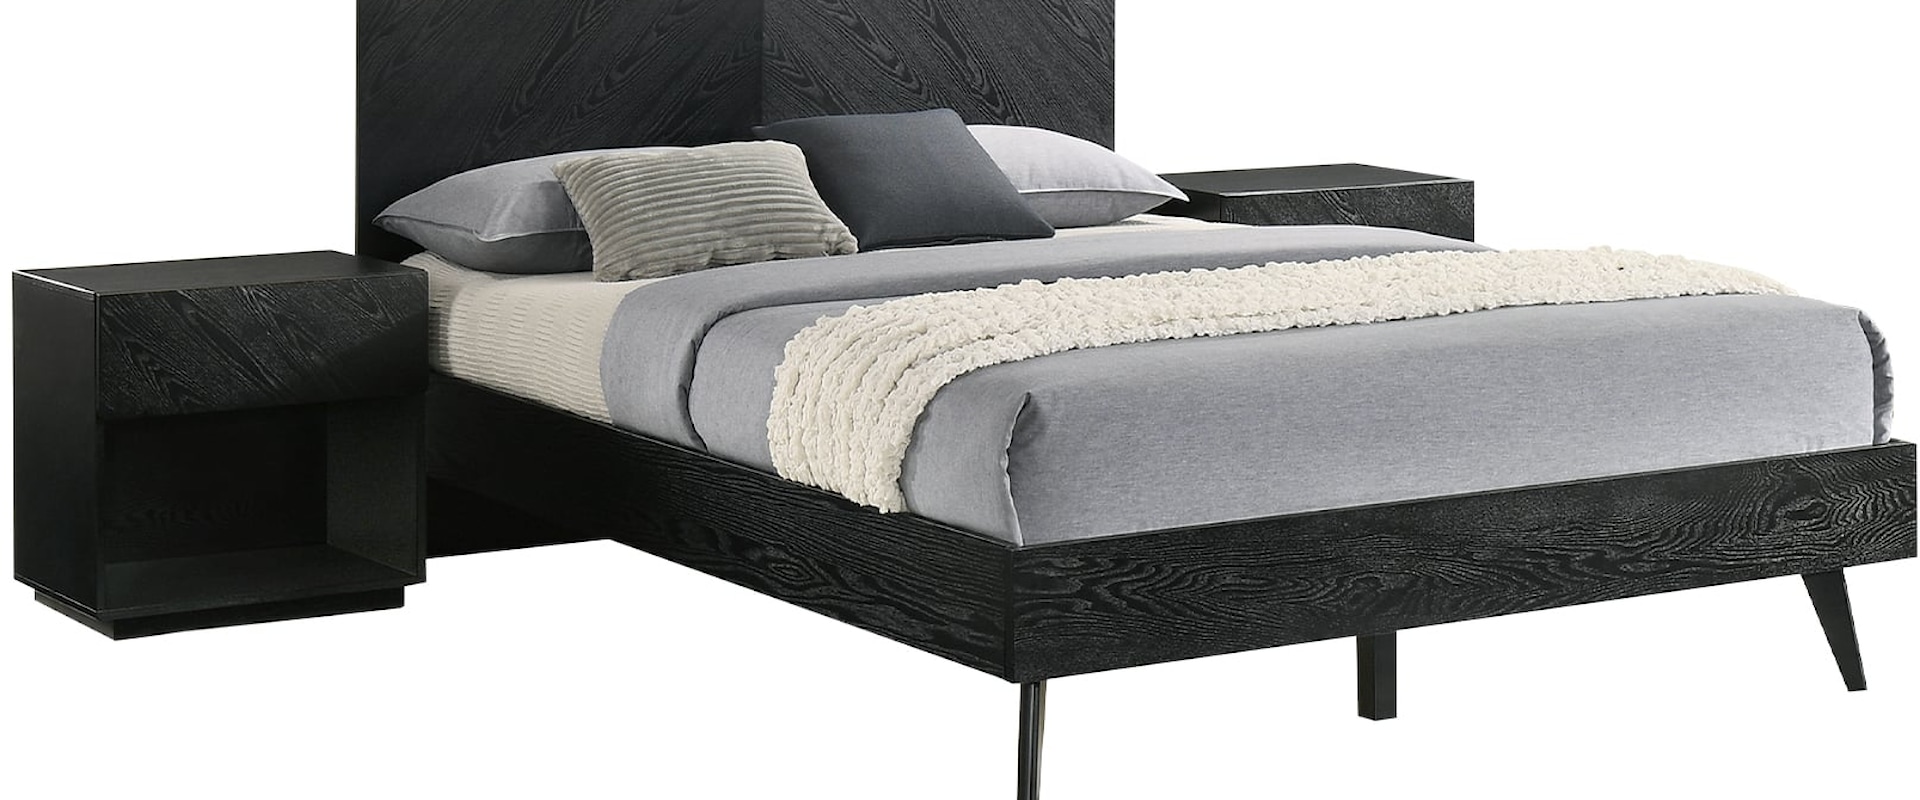 Contemporary Queen 3-Piece Wood Bedroom Set